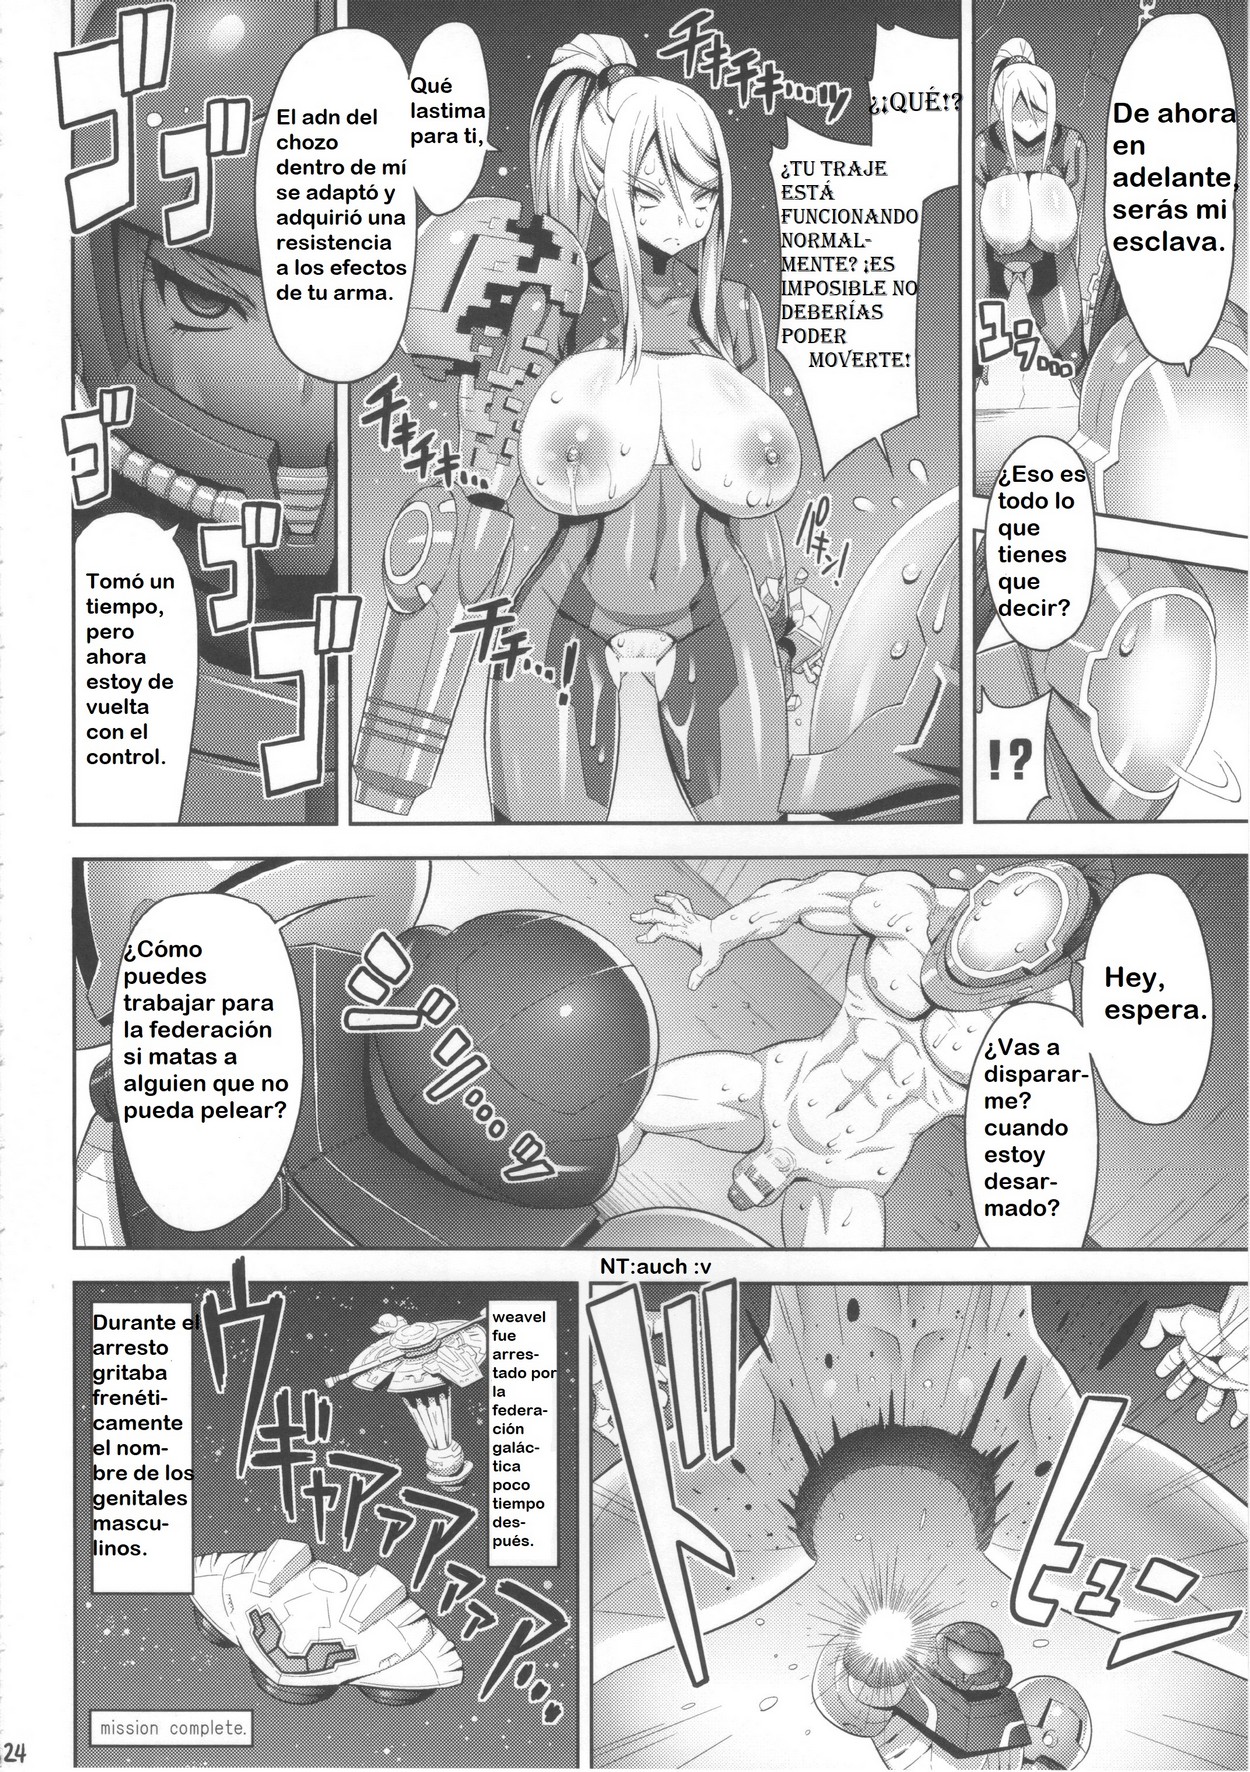 Manga hentay porno Metroid Xxx Manga Hentai Espacil Supermilftoon